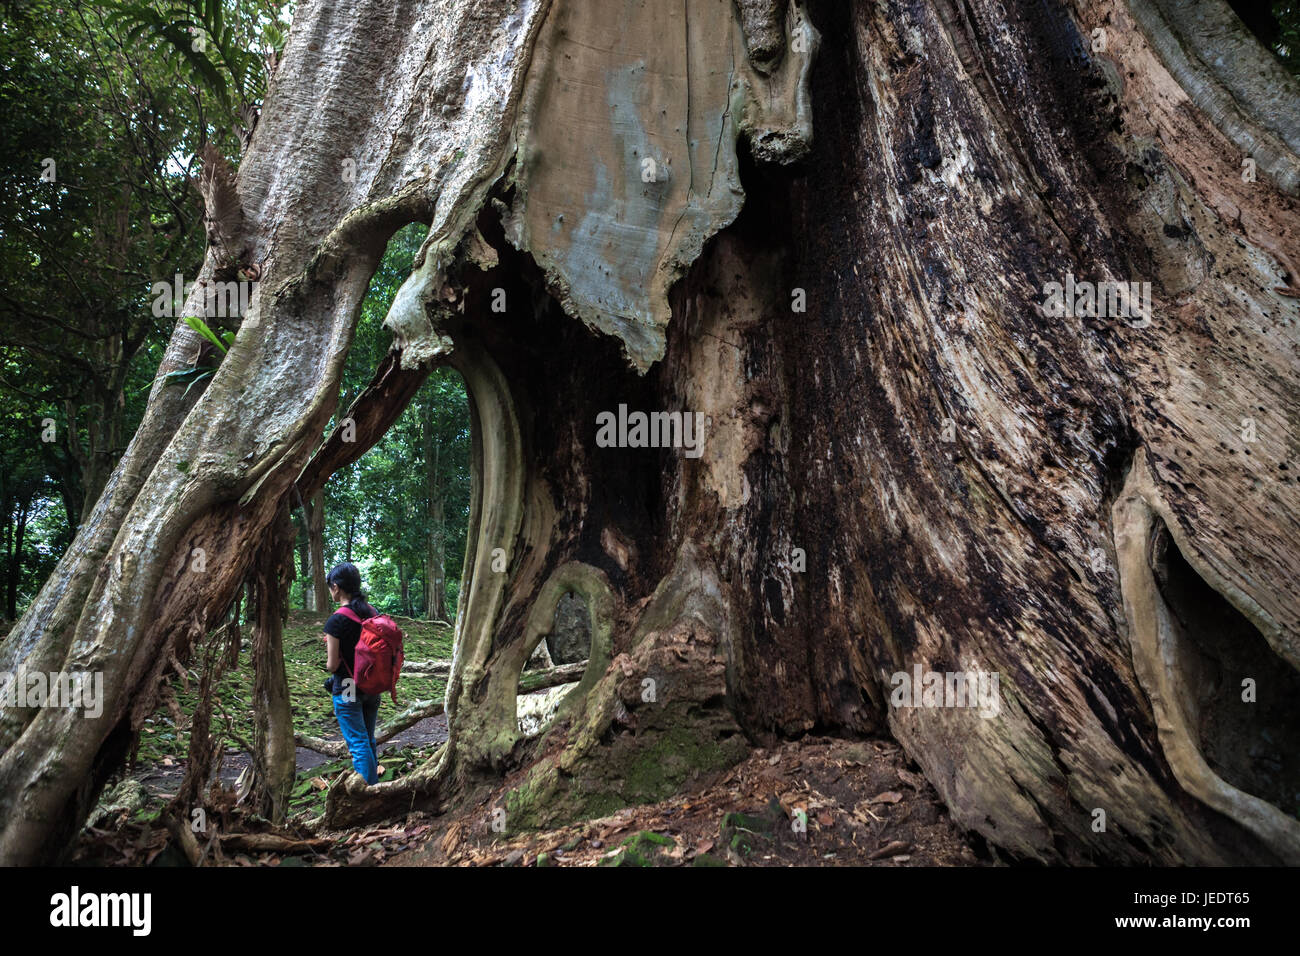 Un albero gigante presso il sito archeologico di Koto Mahligai a Muarojambi, Jambi, Indonesia. Foto Stock